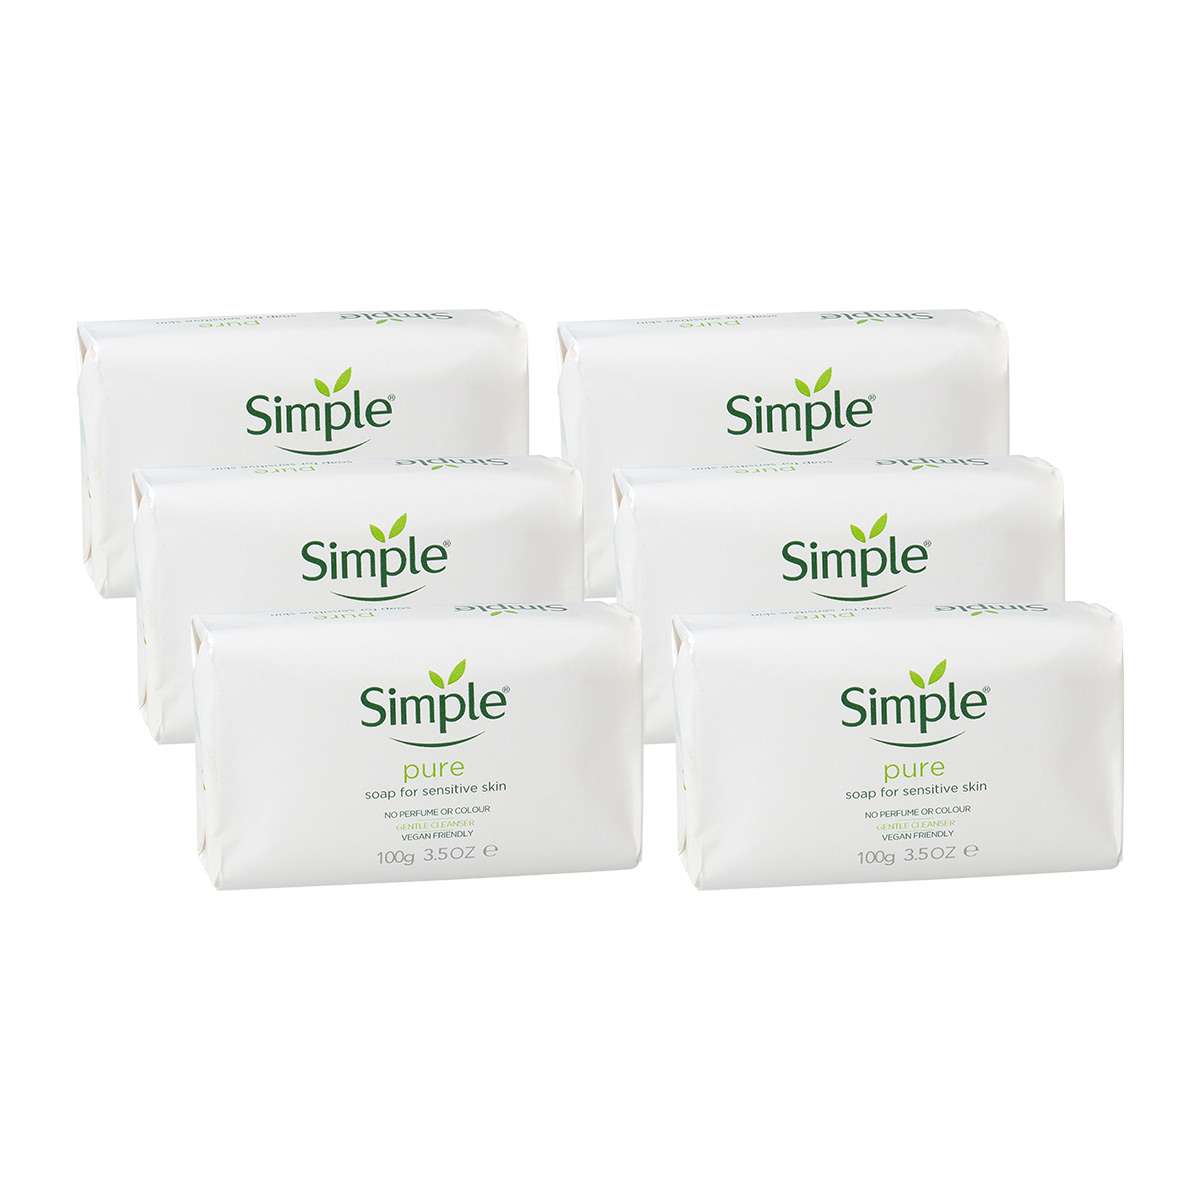 Simple Seife kaufen im günstigen Sparpack 6 x 100 g von Simple Kosmetik